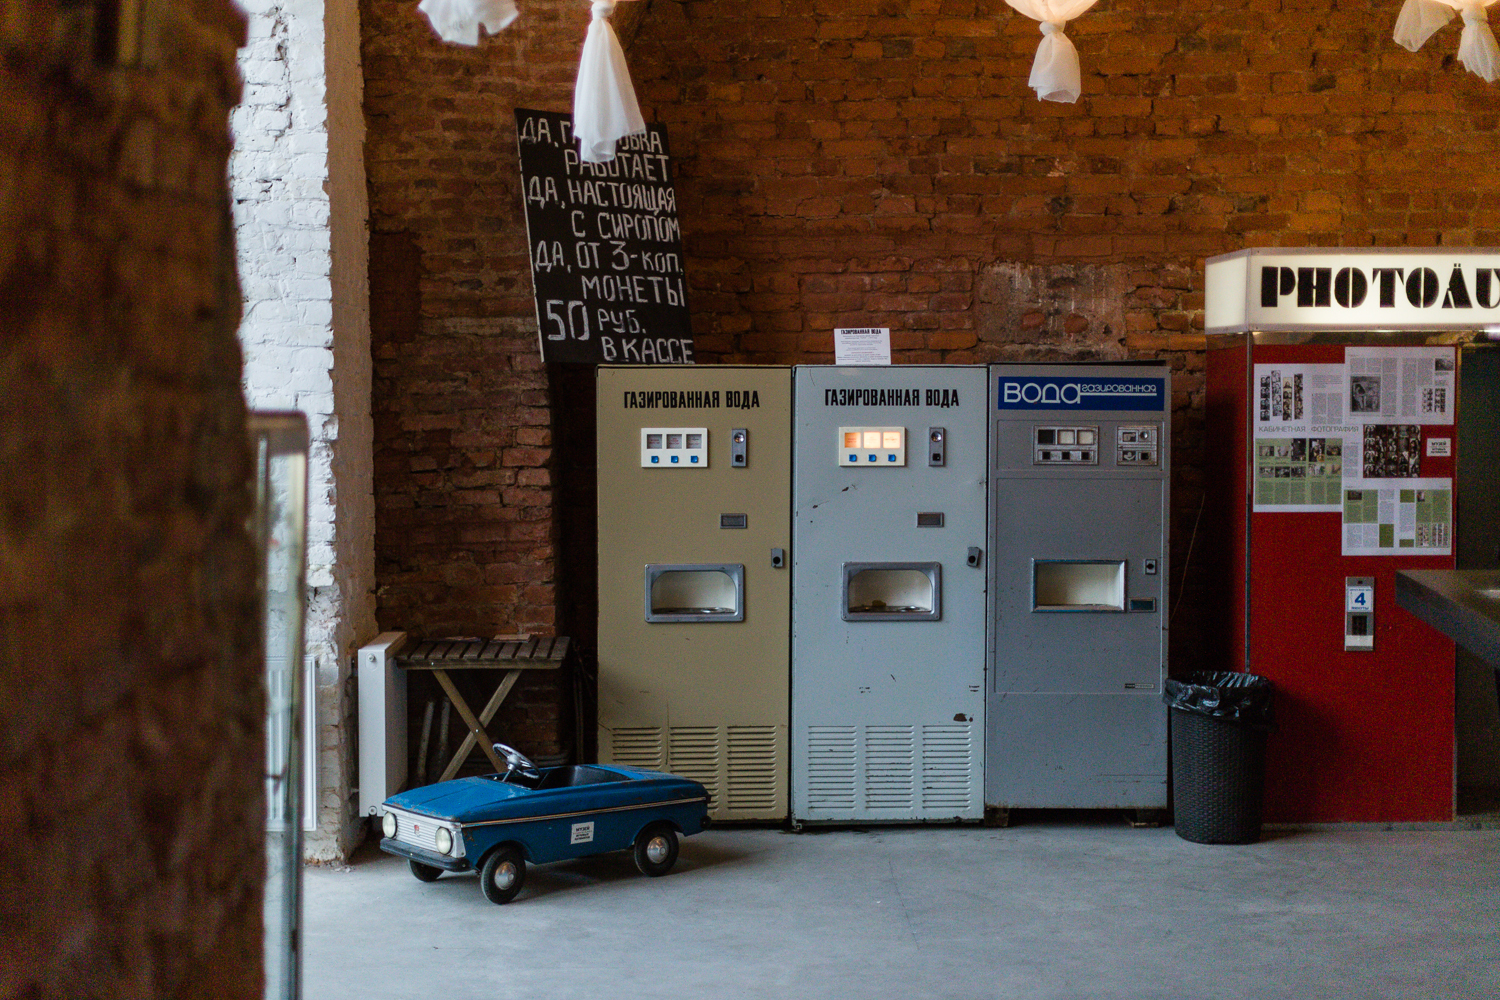 музей игровых автоматов санкт петербург сайт